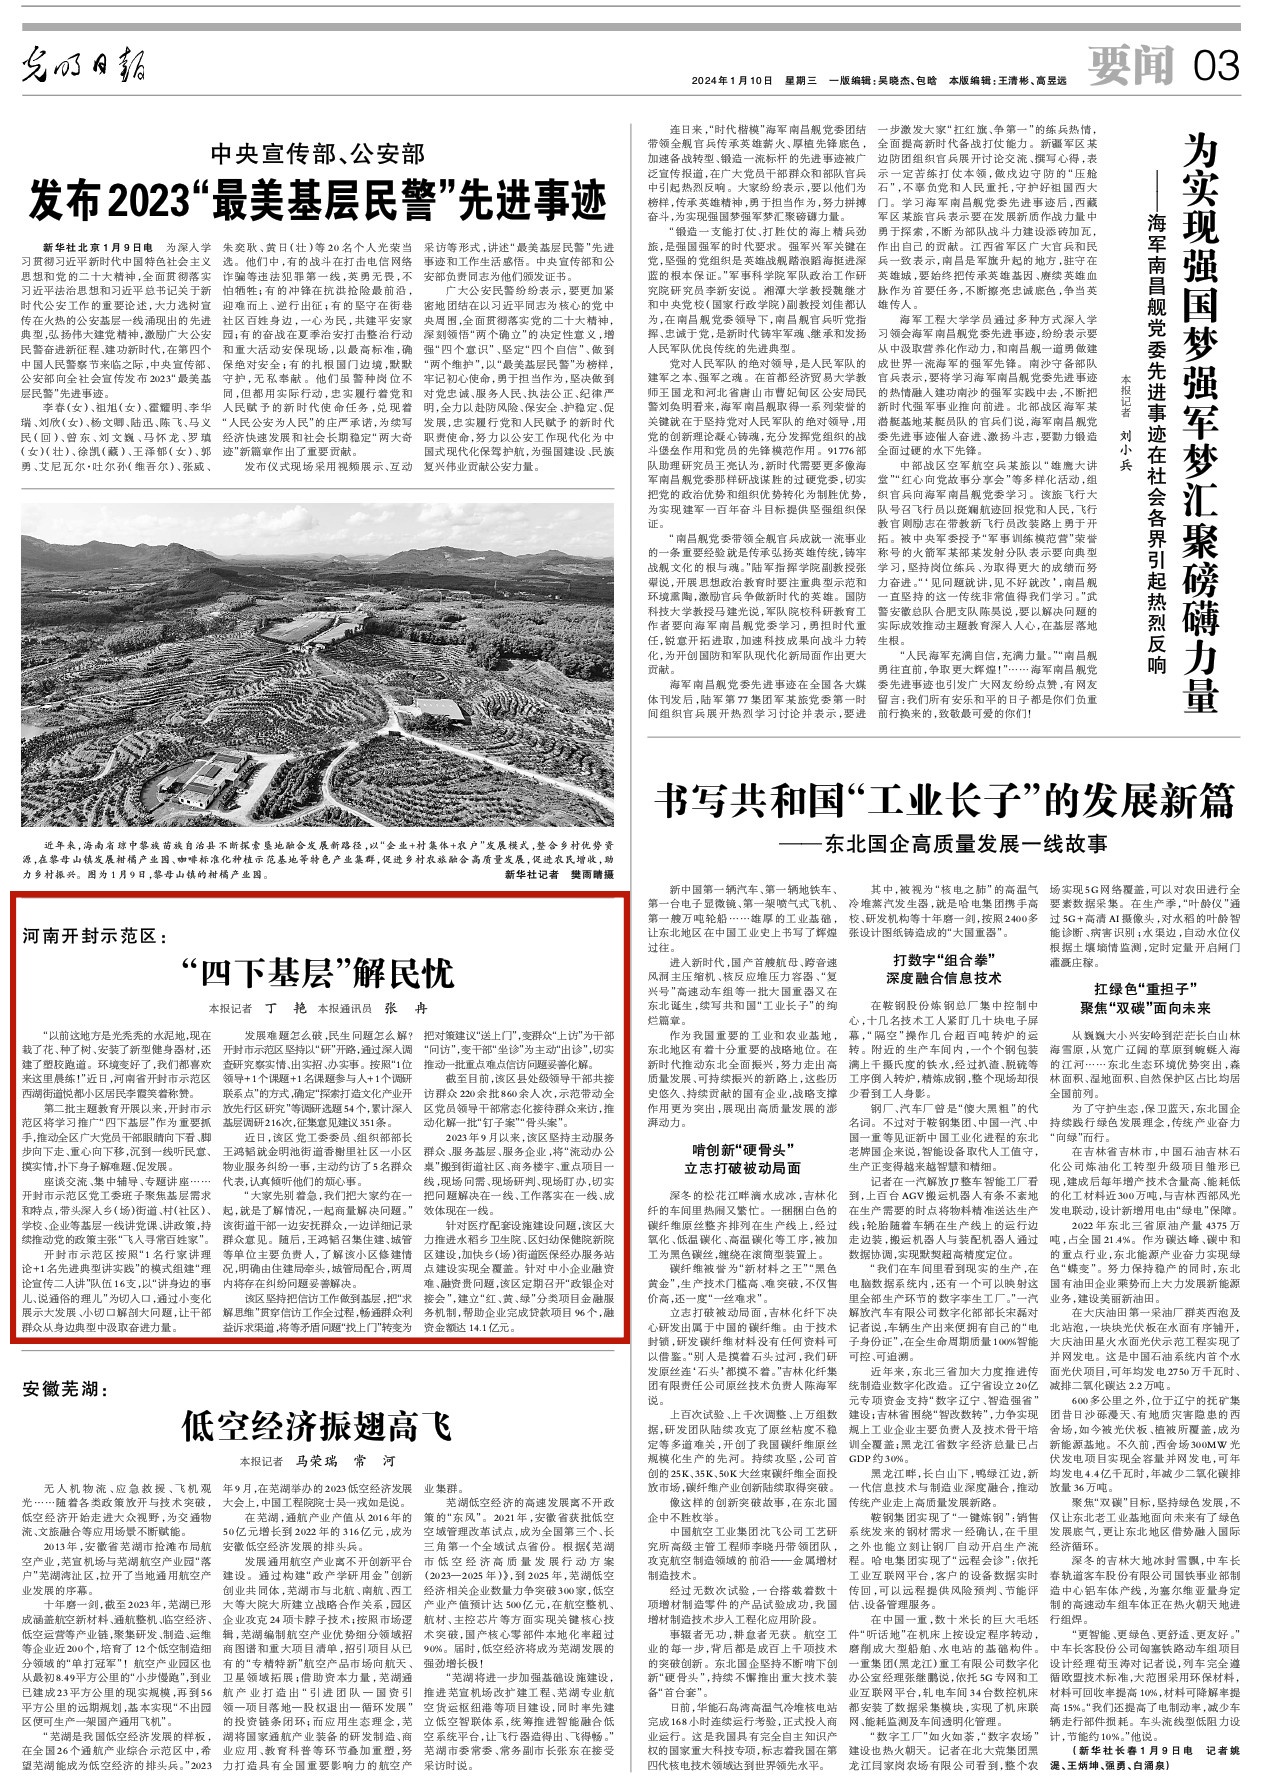 央媒观豫 |光明日报关注河南开封示范区：“四下基层”解民忧